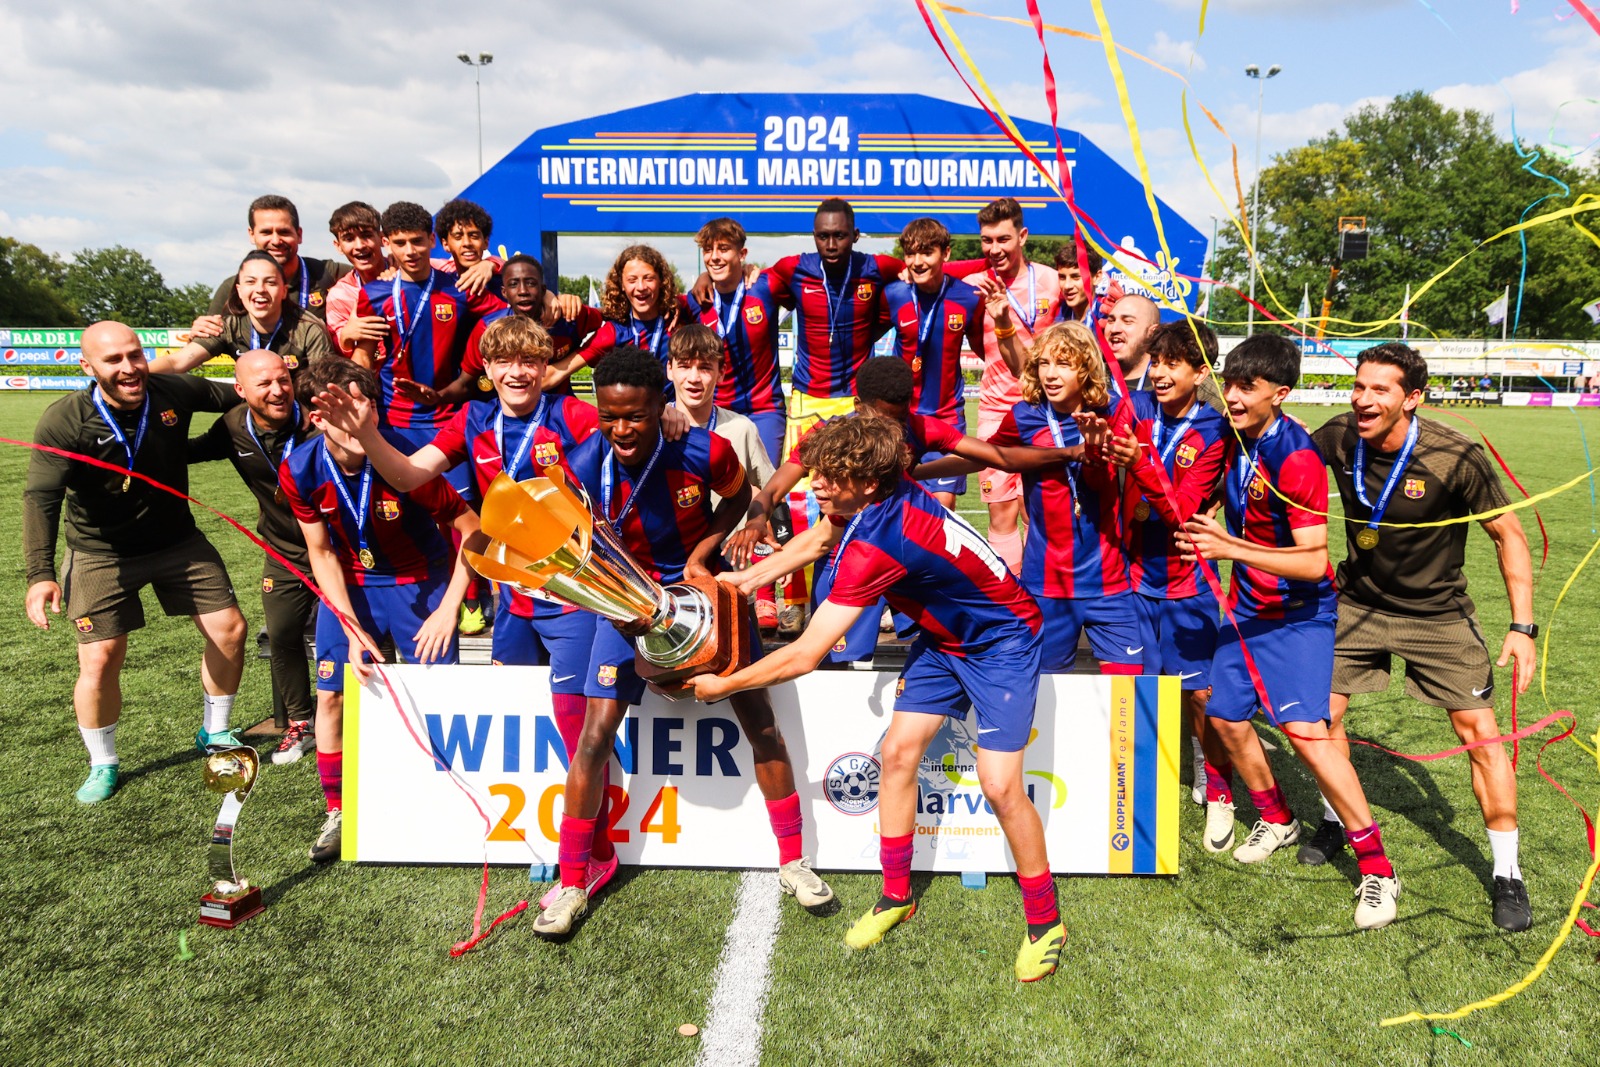 Marveldtoernooi 2024 - Winnaar FC Barcelona